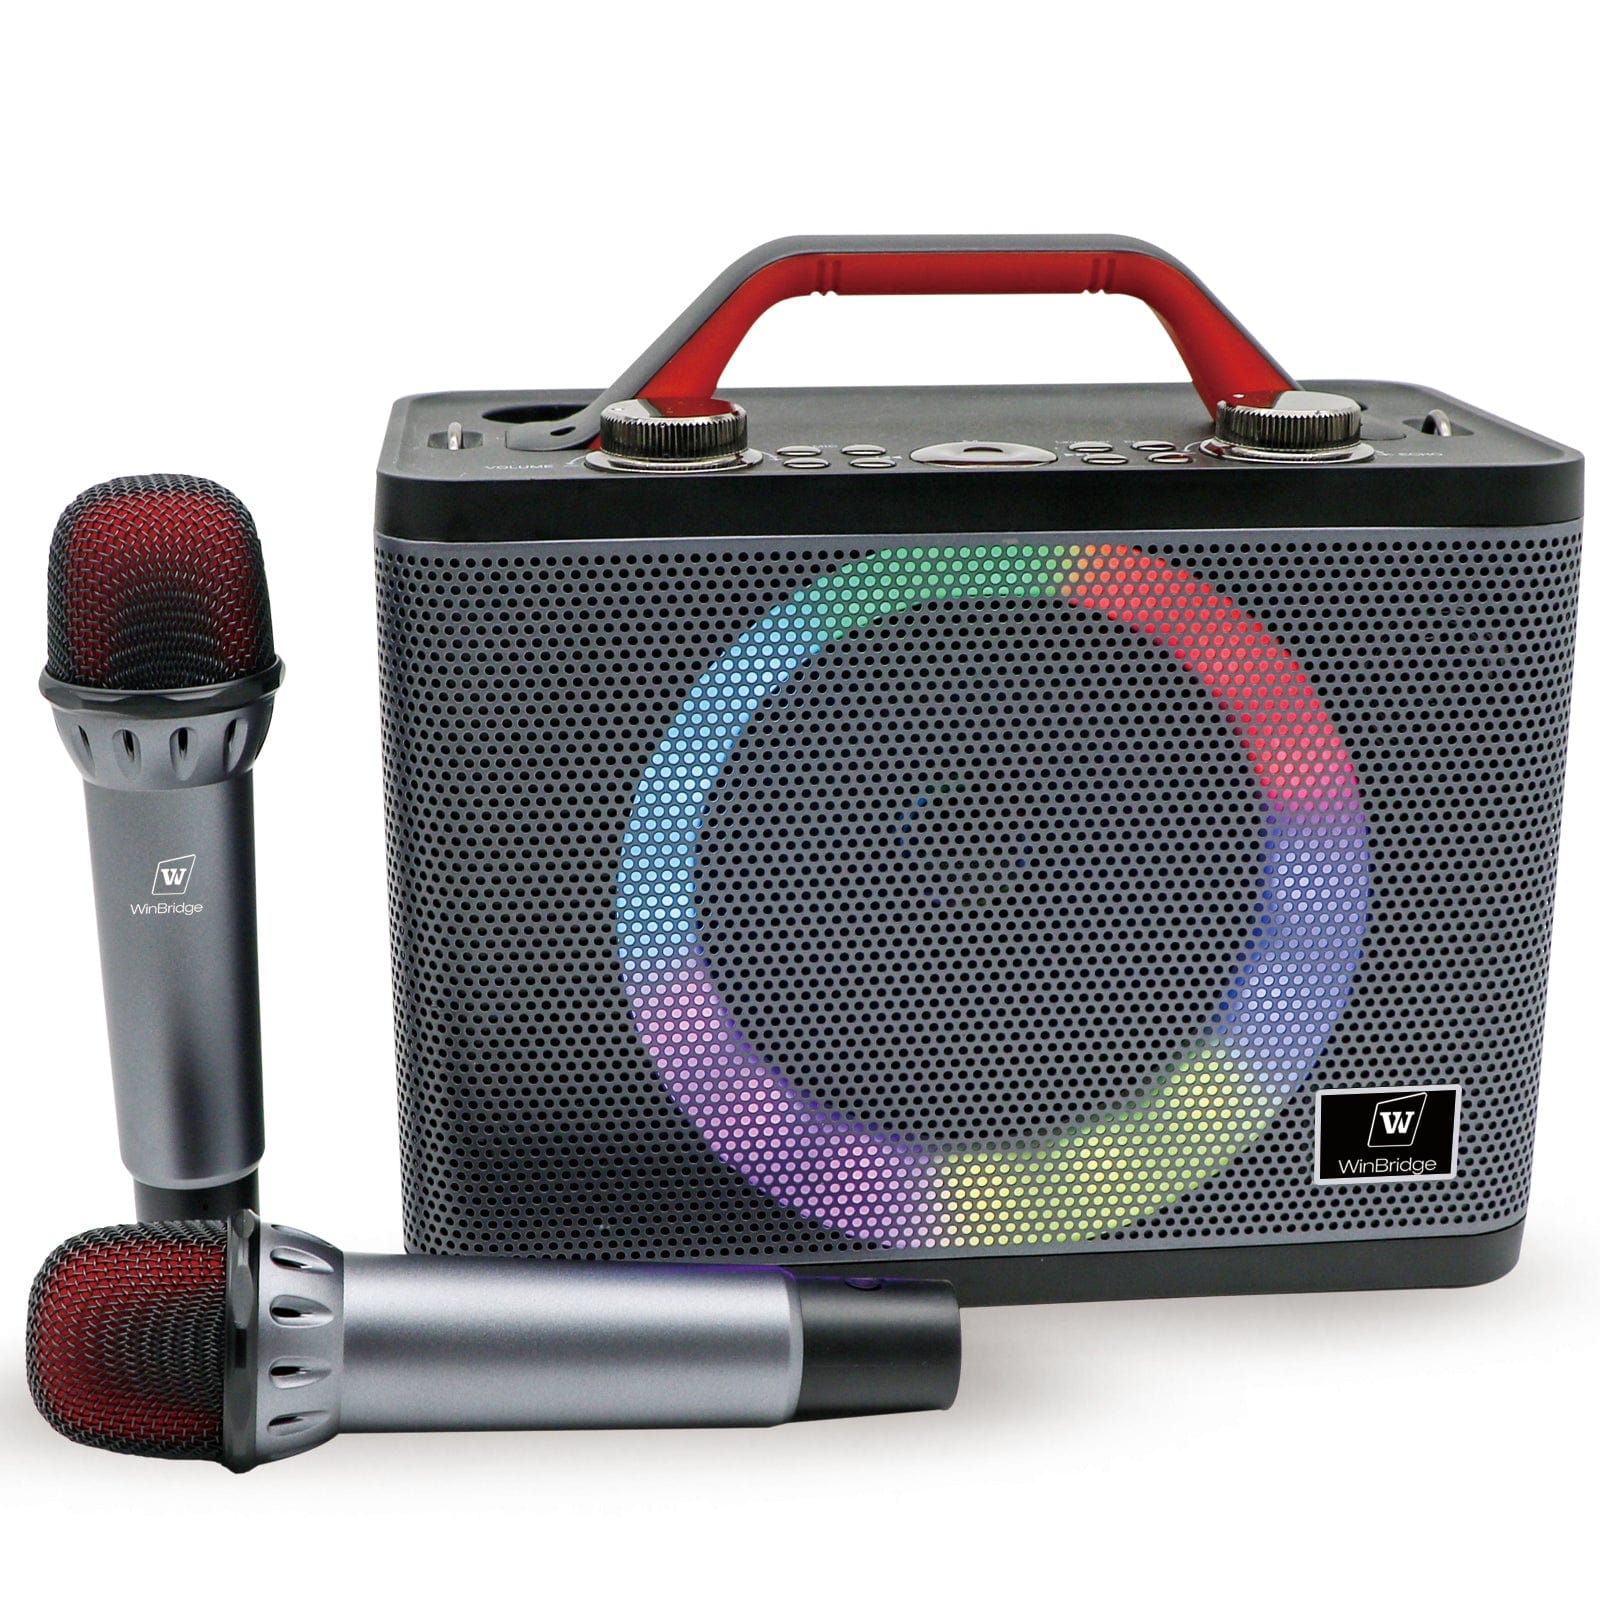 WinBridge T8 Ultra-Portable Karaoke Speaker with Dual Wireless Bluetooth wireless Microphones